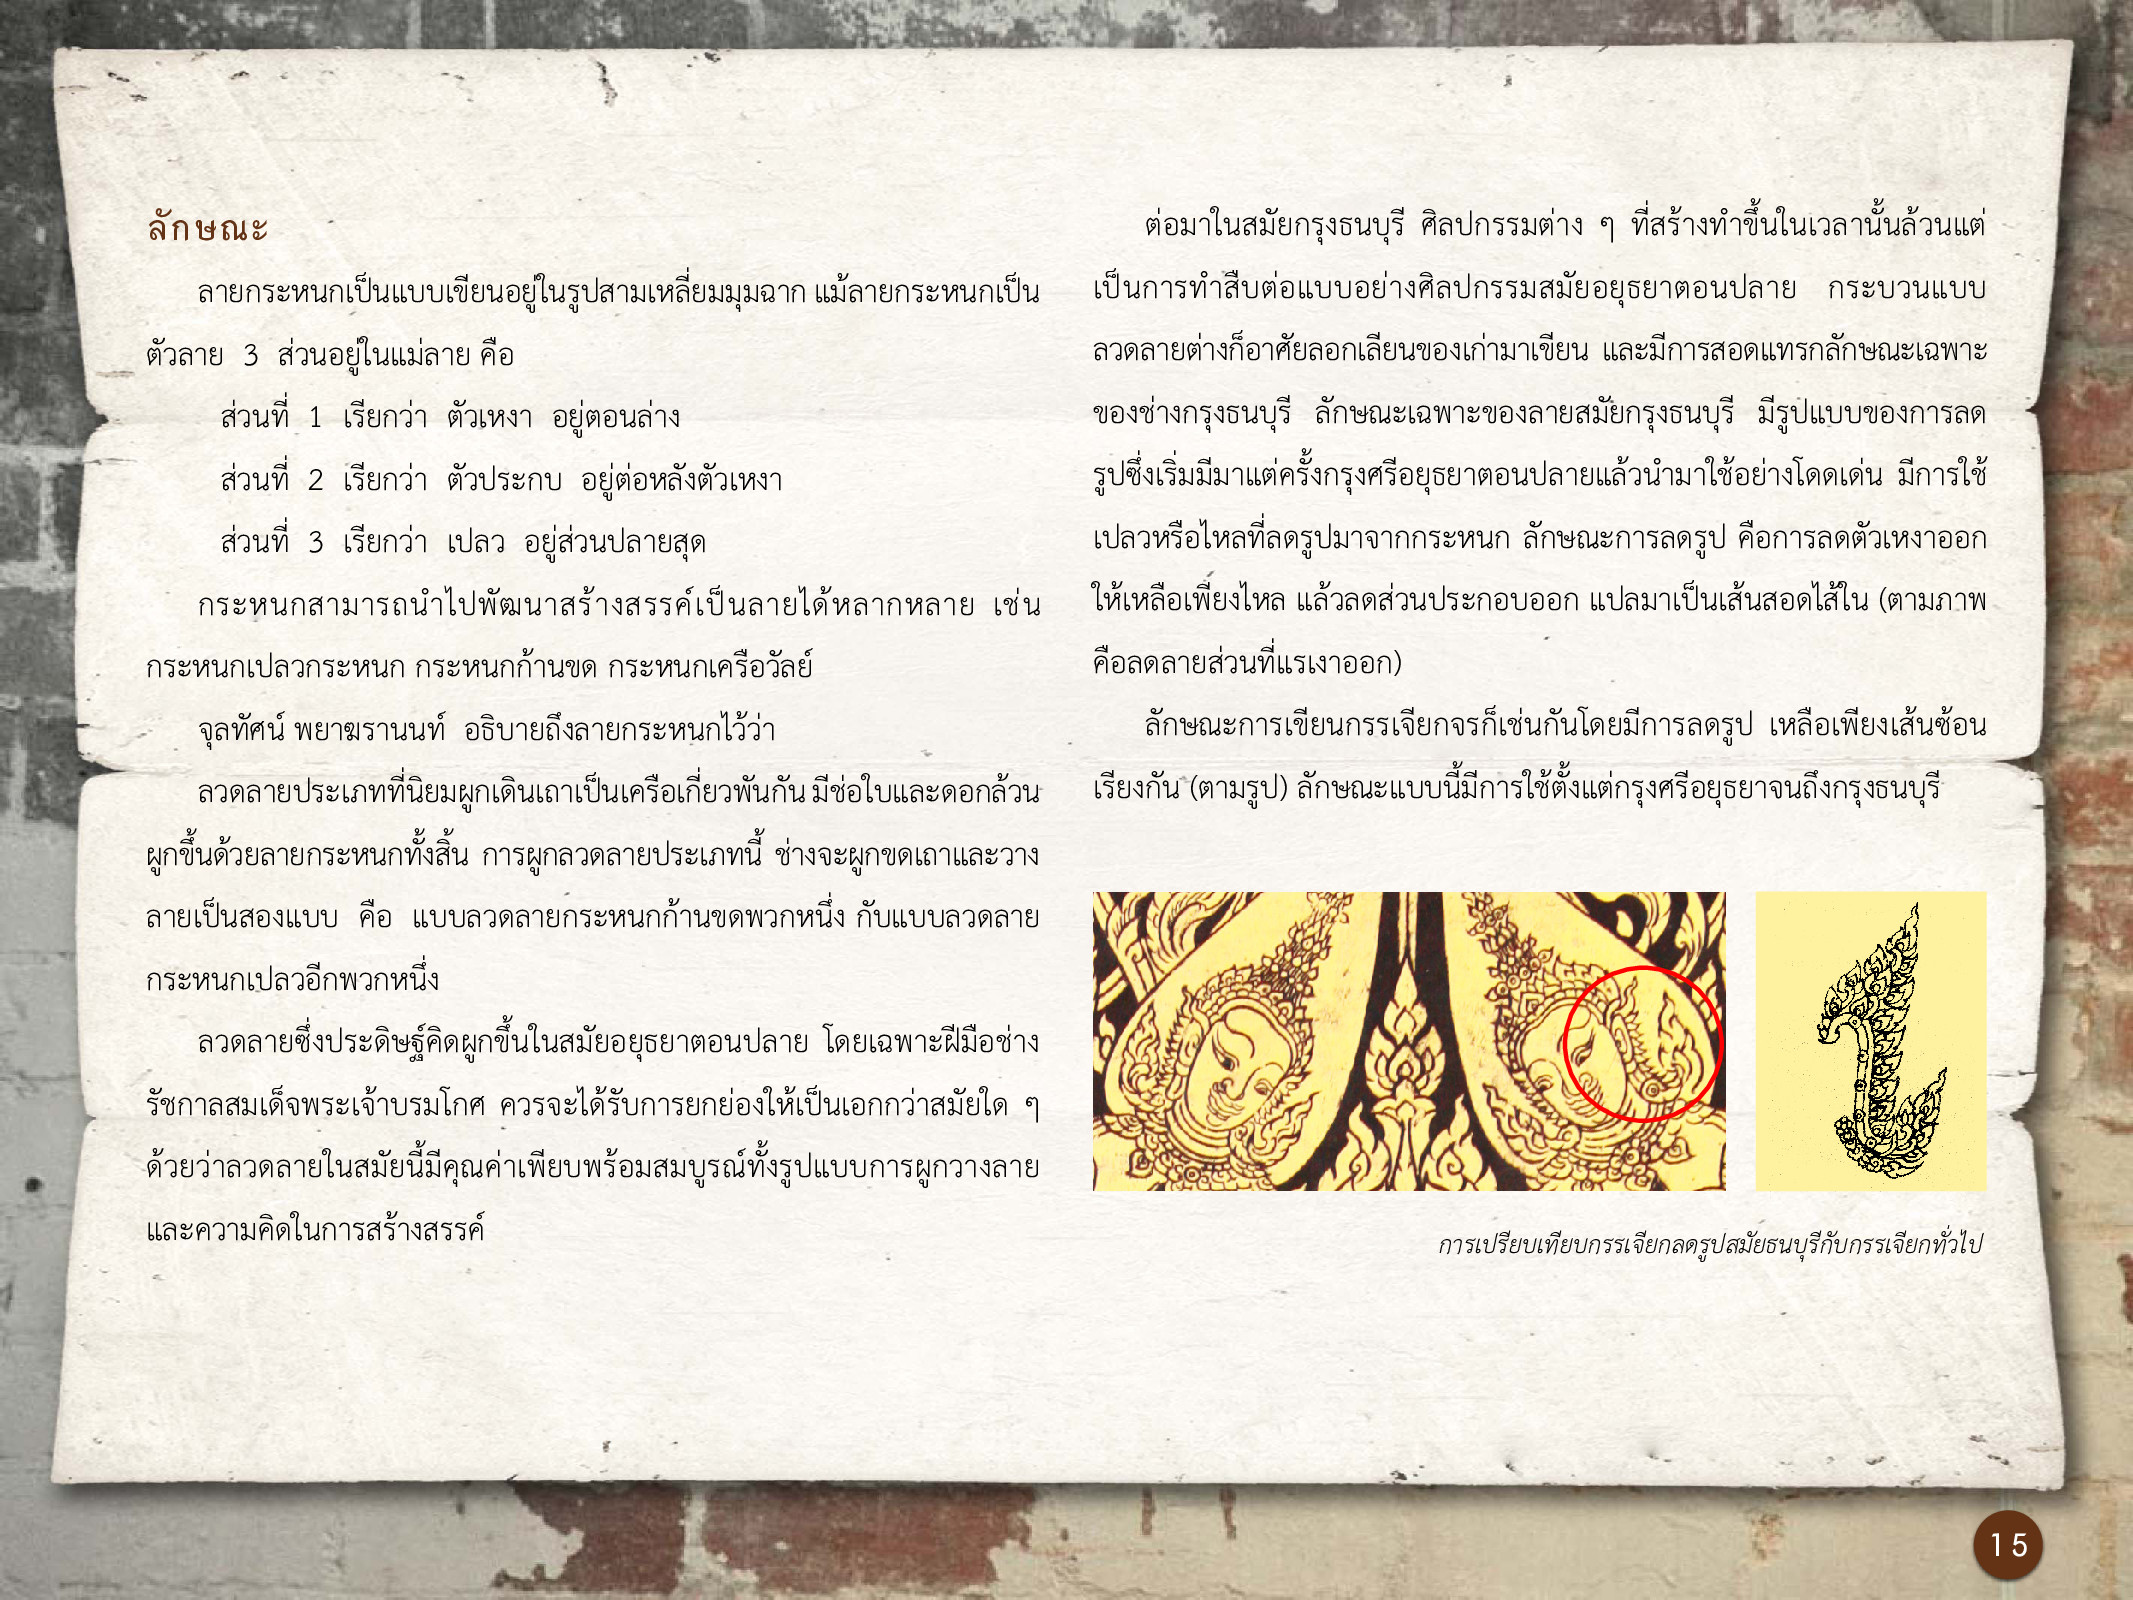 ศิลปกรรมกรุงธนบุรี ./images/encyclopedia/15.jpg